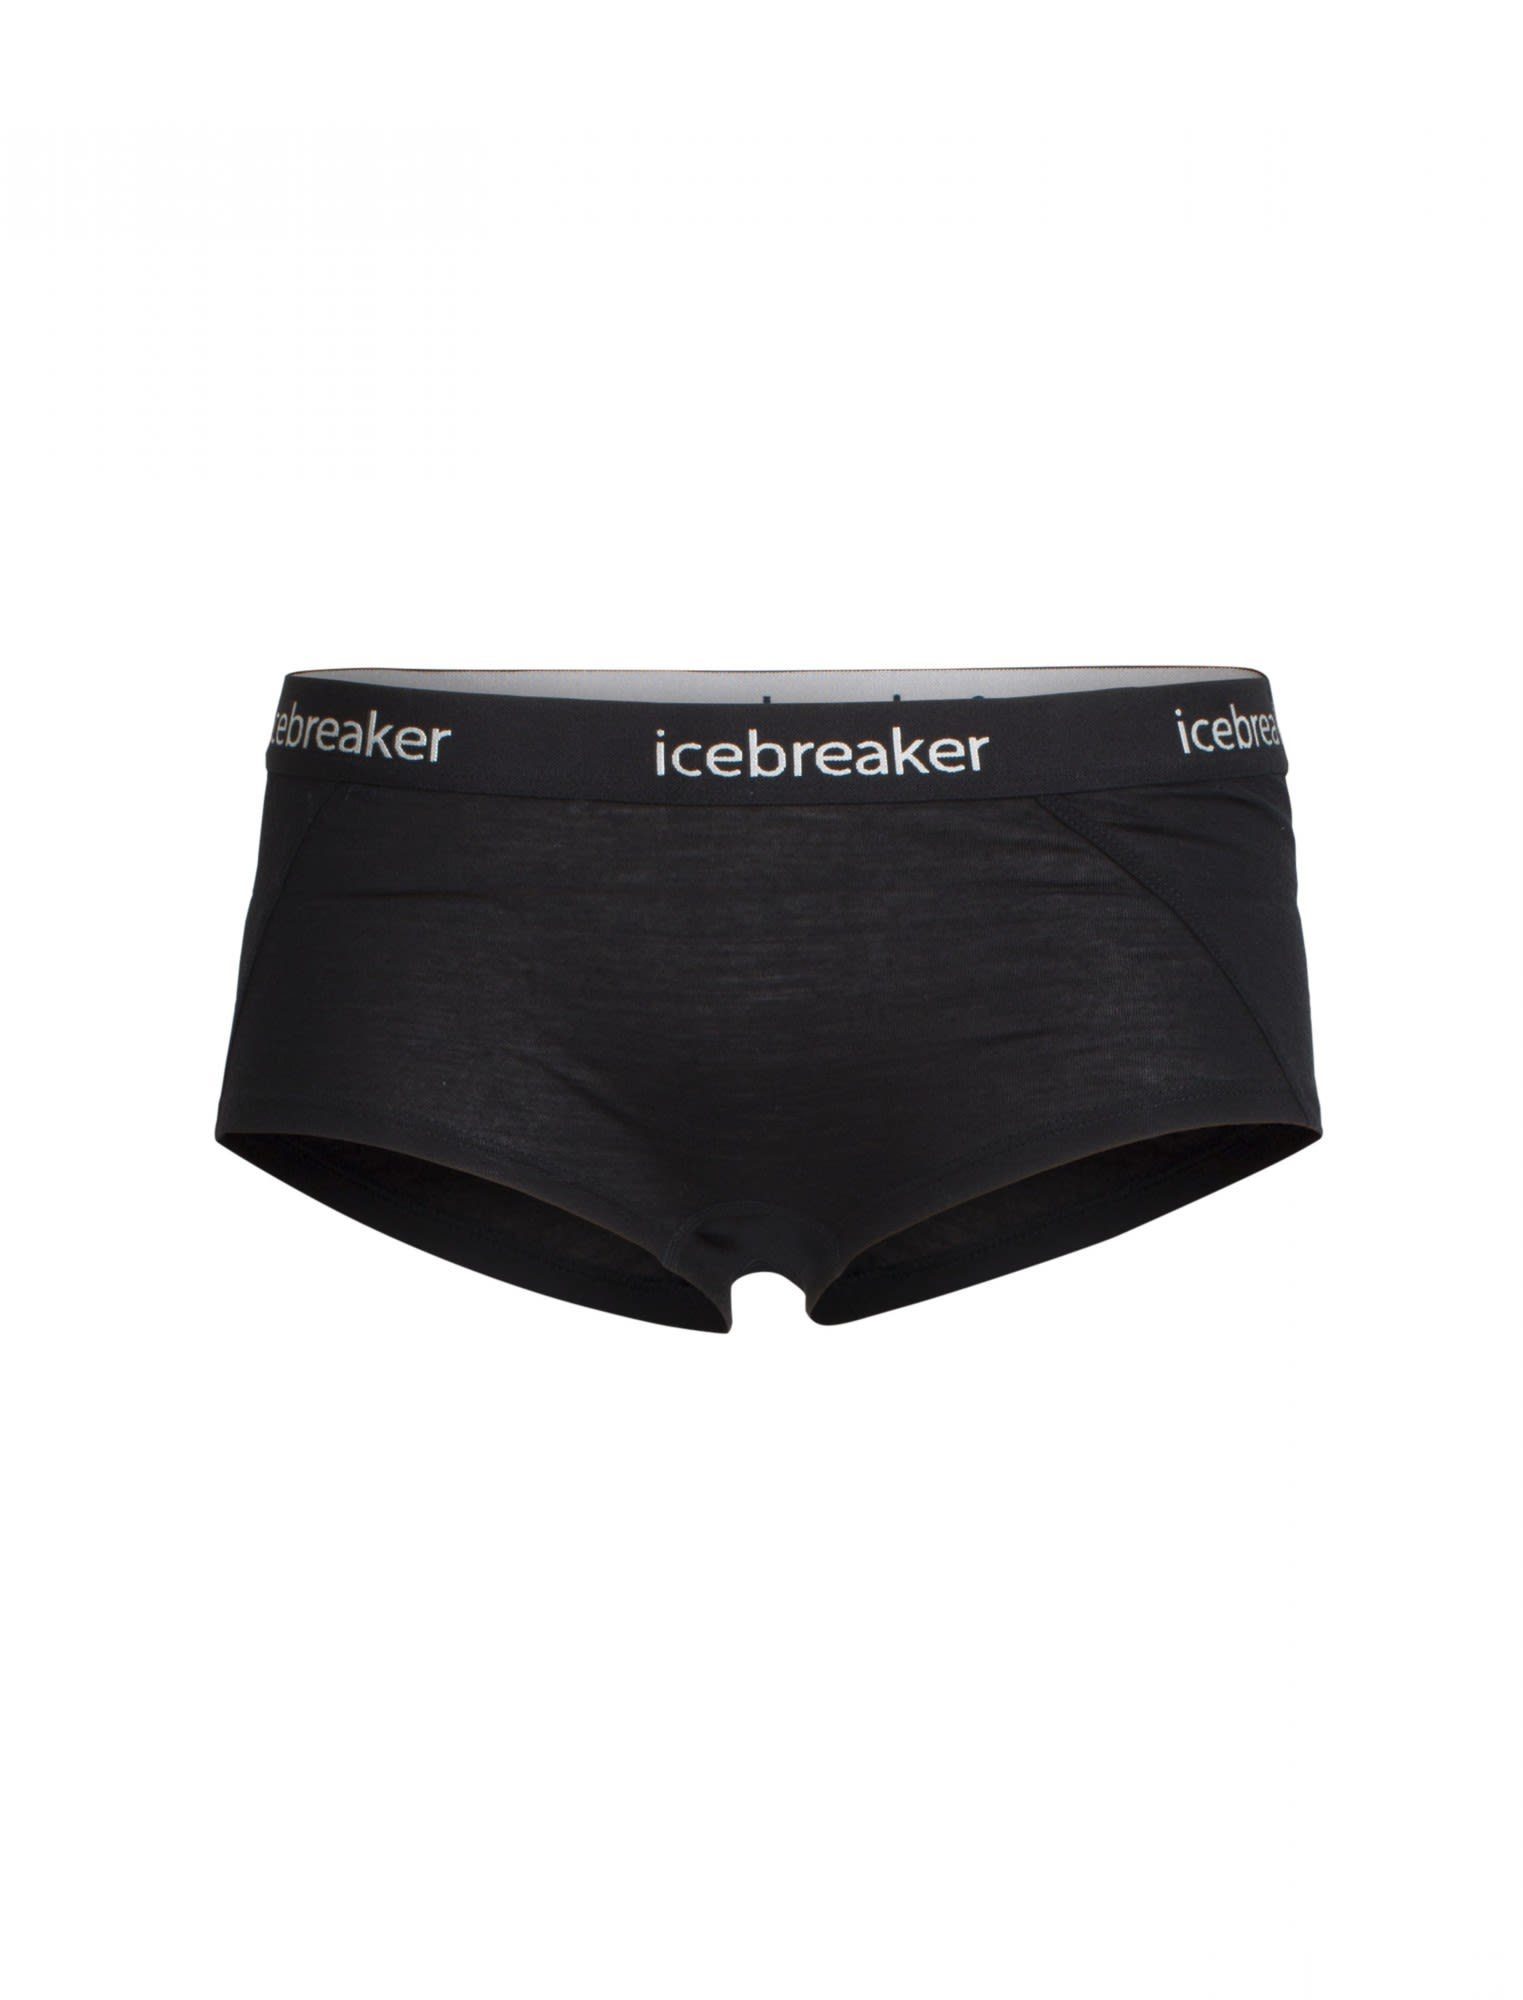 Icebreaker Lange Kurze Sprite W Damen Hot Unterhose Pants Icebreaker Black